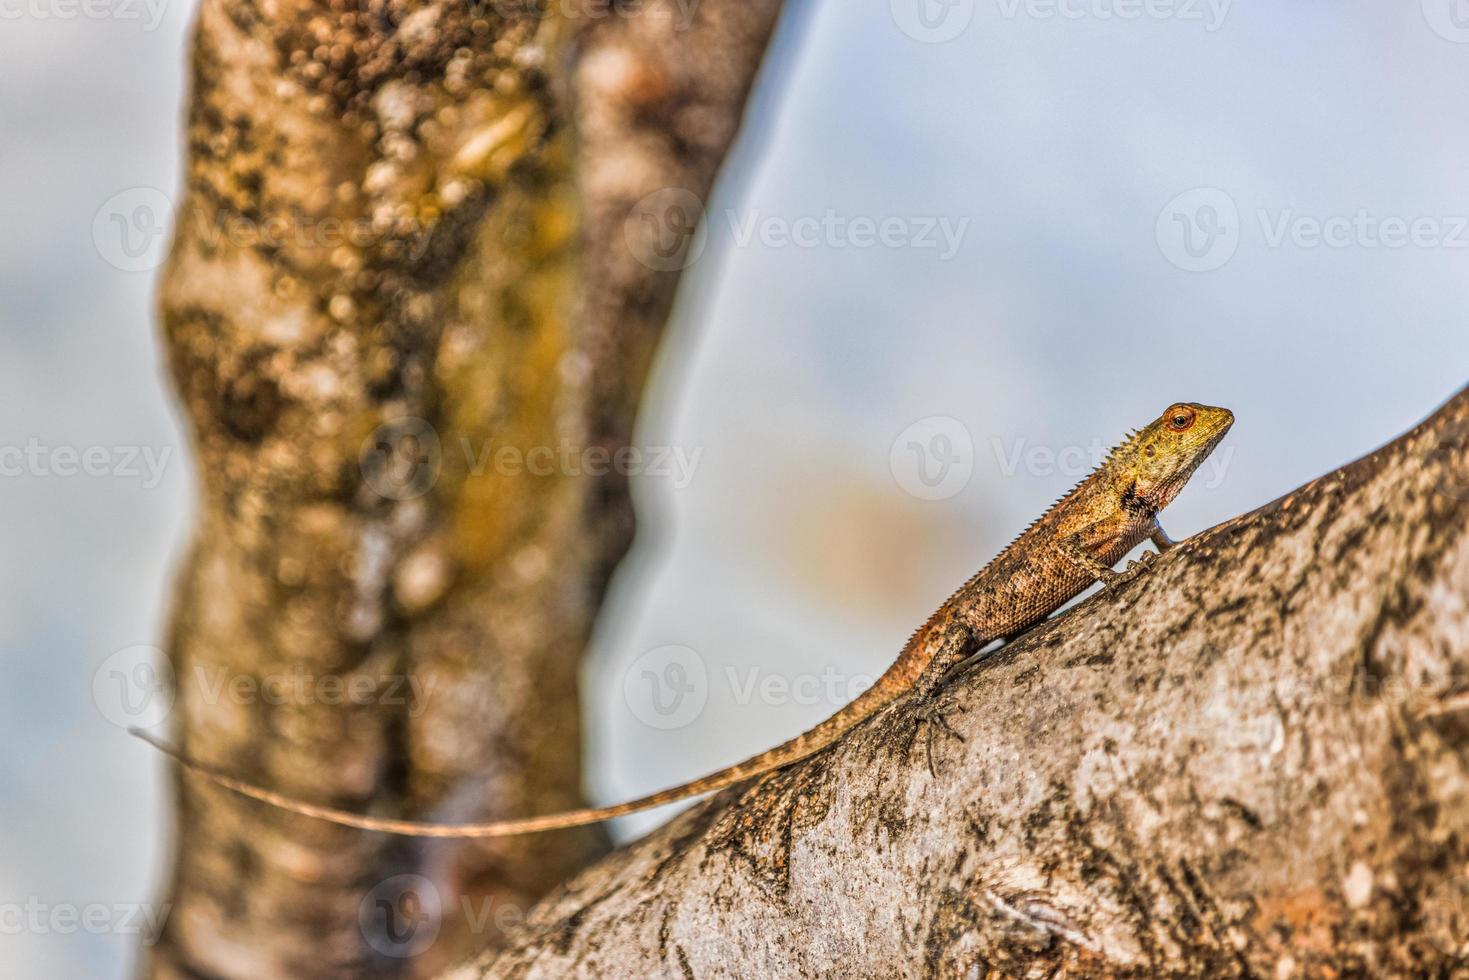 lagarto de jardim oriental no galho de árvore com fundo de areia branca turva. vida selvagem da ilha tropical, réptil subindo na árvore foto